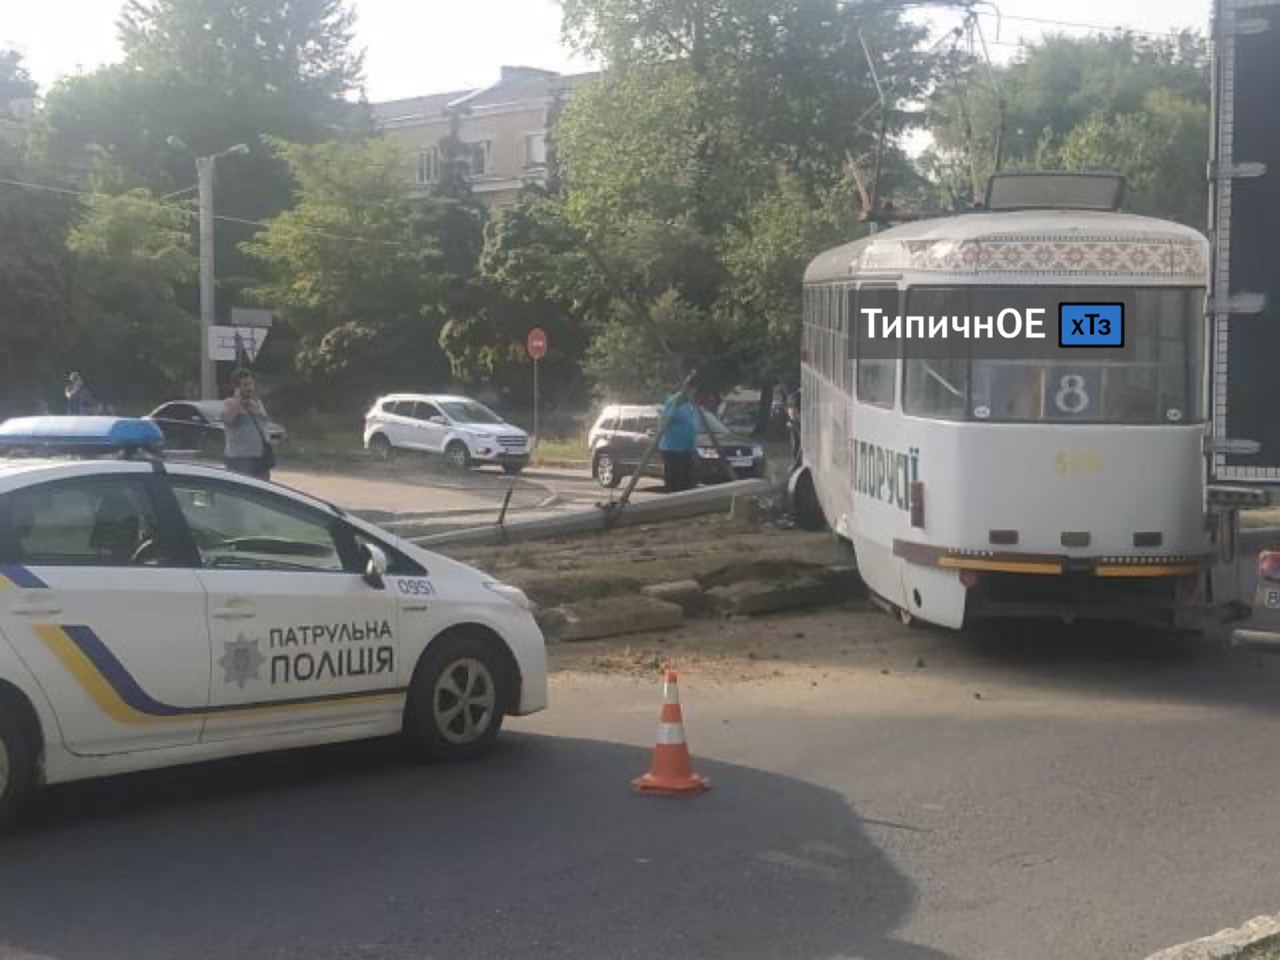 Снесенный столб на Морозова: есть пострадавшие, трамваи не ходят (фото, видео)